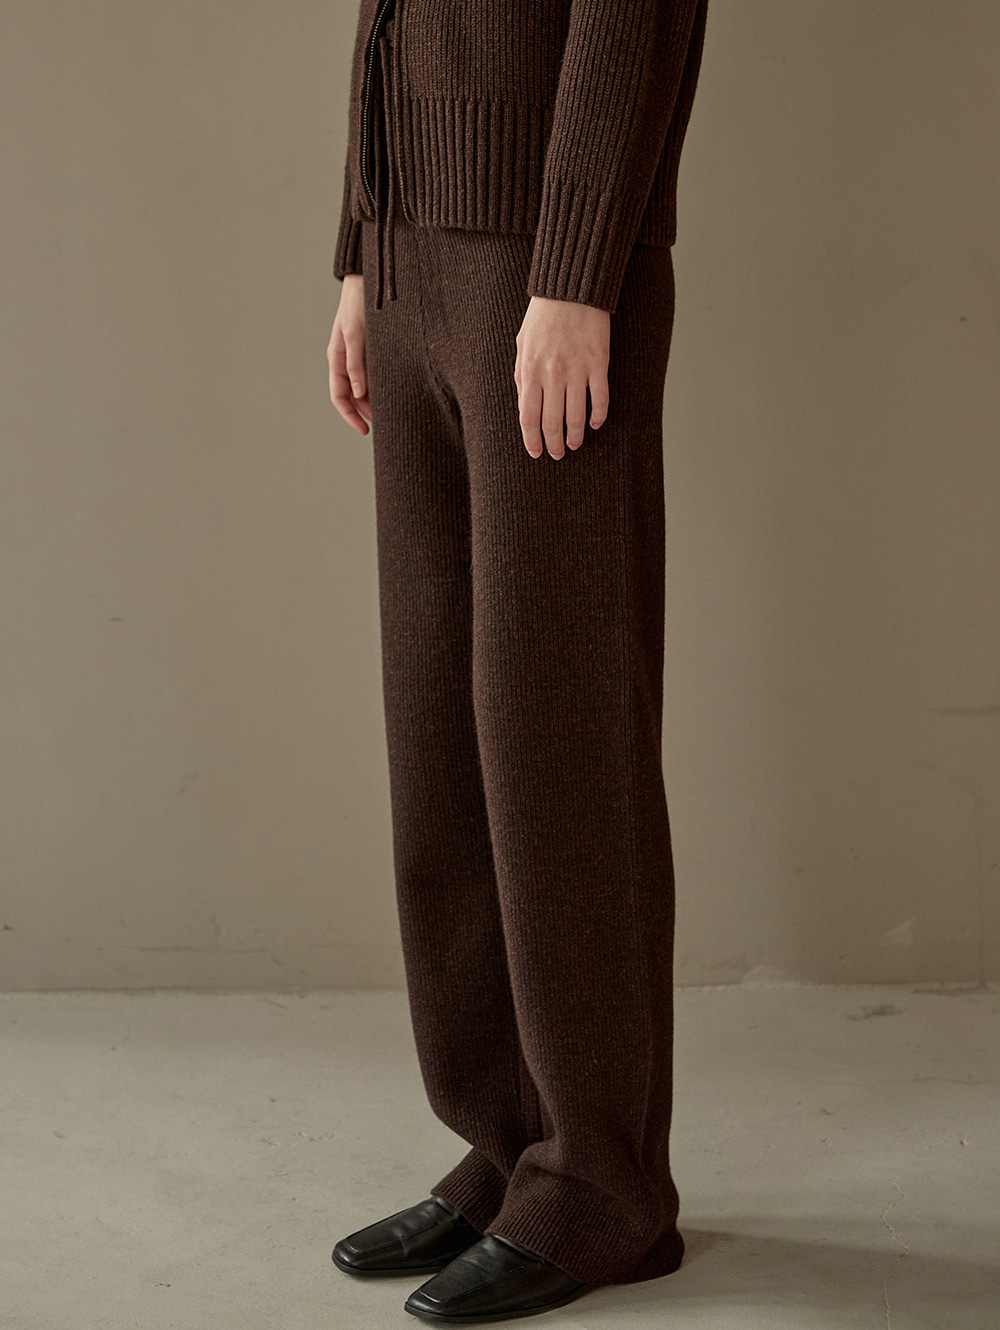 Ribbed knit pants (brown)